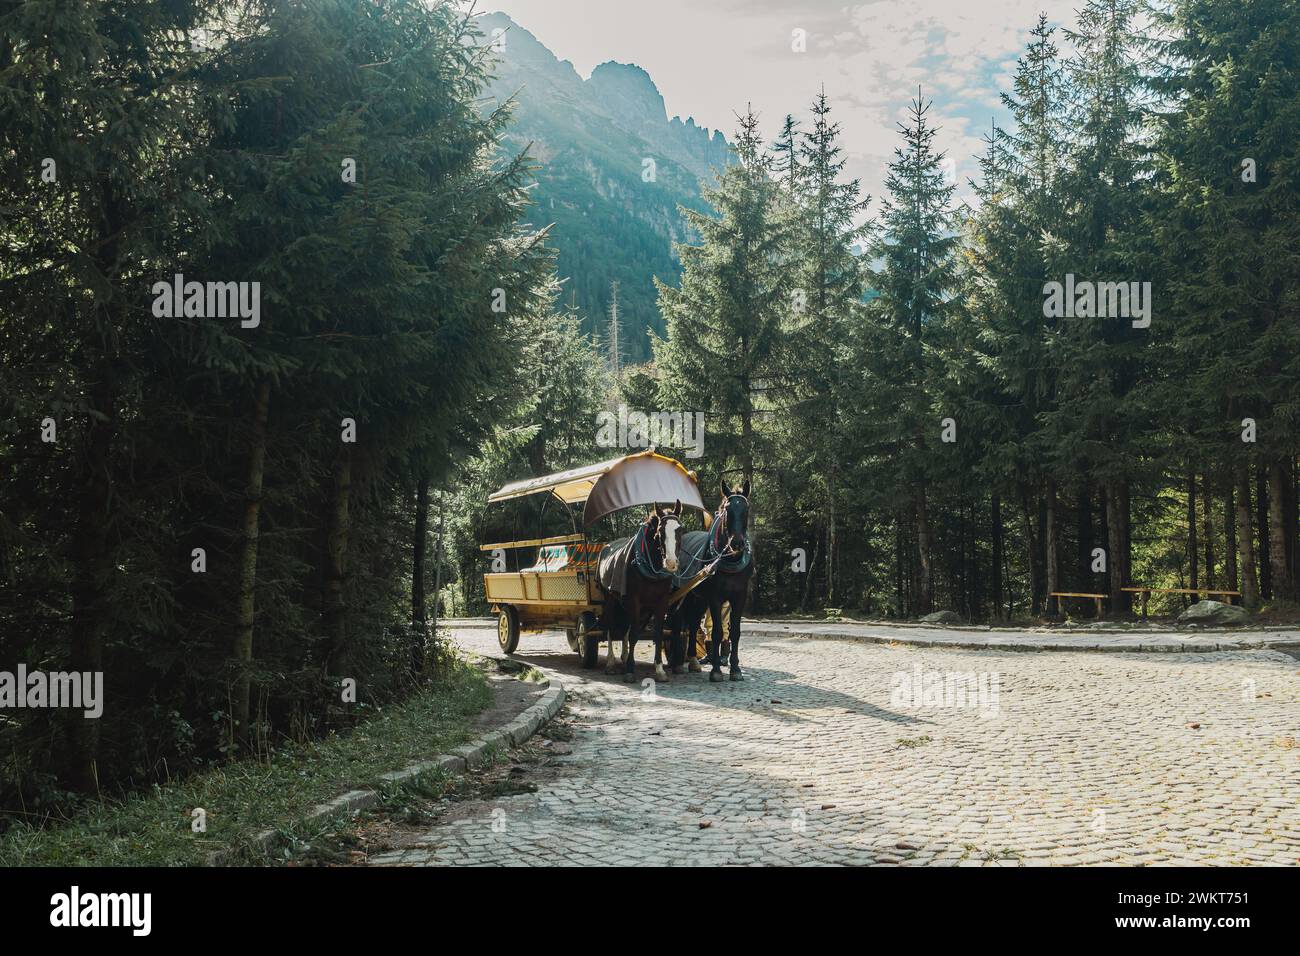 Parco nazionale dei Monti Tatra, Dolina Rybiego Potoku, Wlosienica vicino a Zakopane, giro in carretto a cavalli, trasporto al lago alpino Morskie Oko Foto Stock